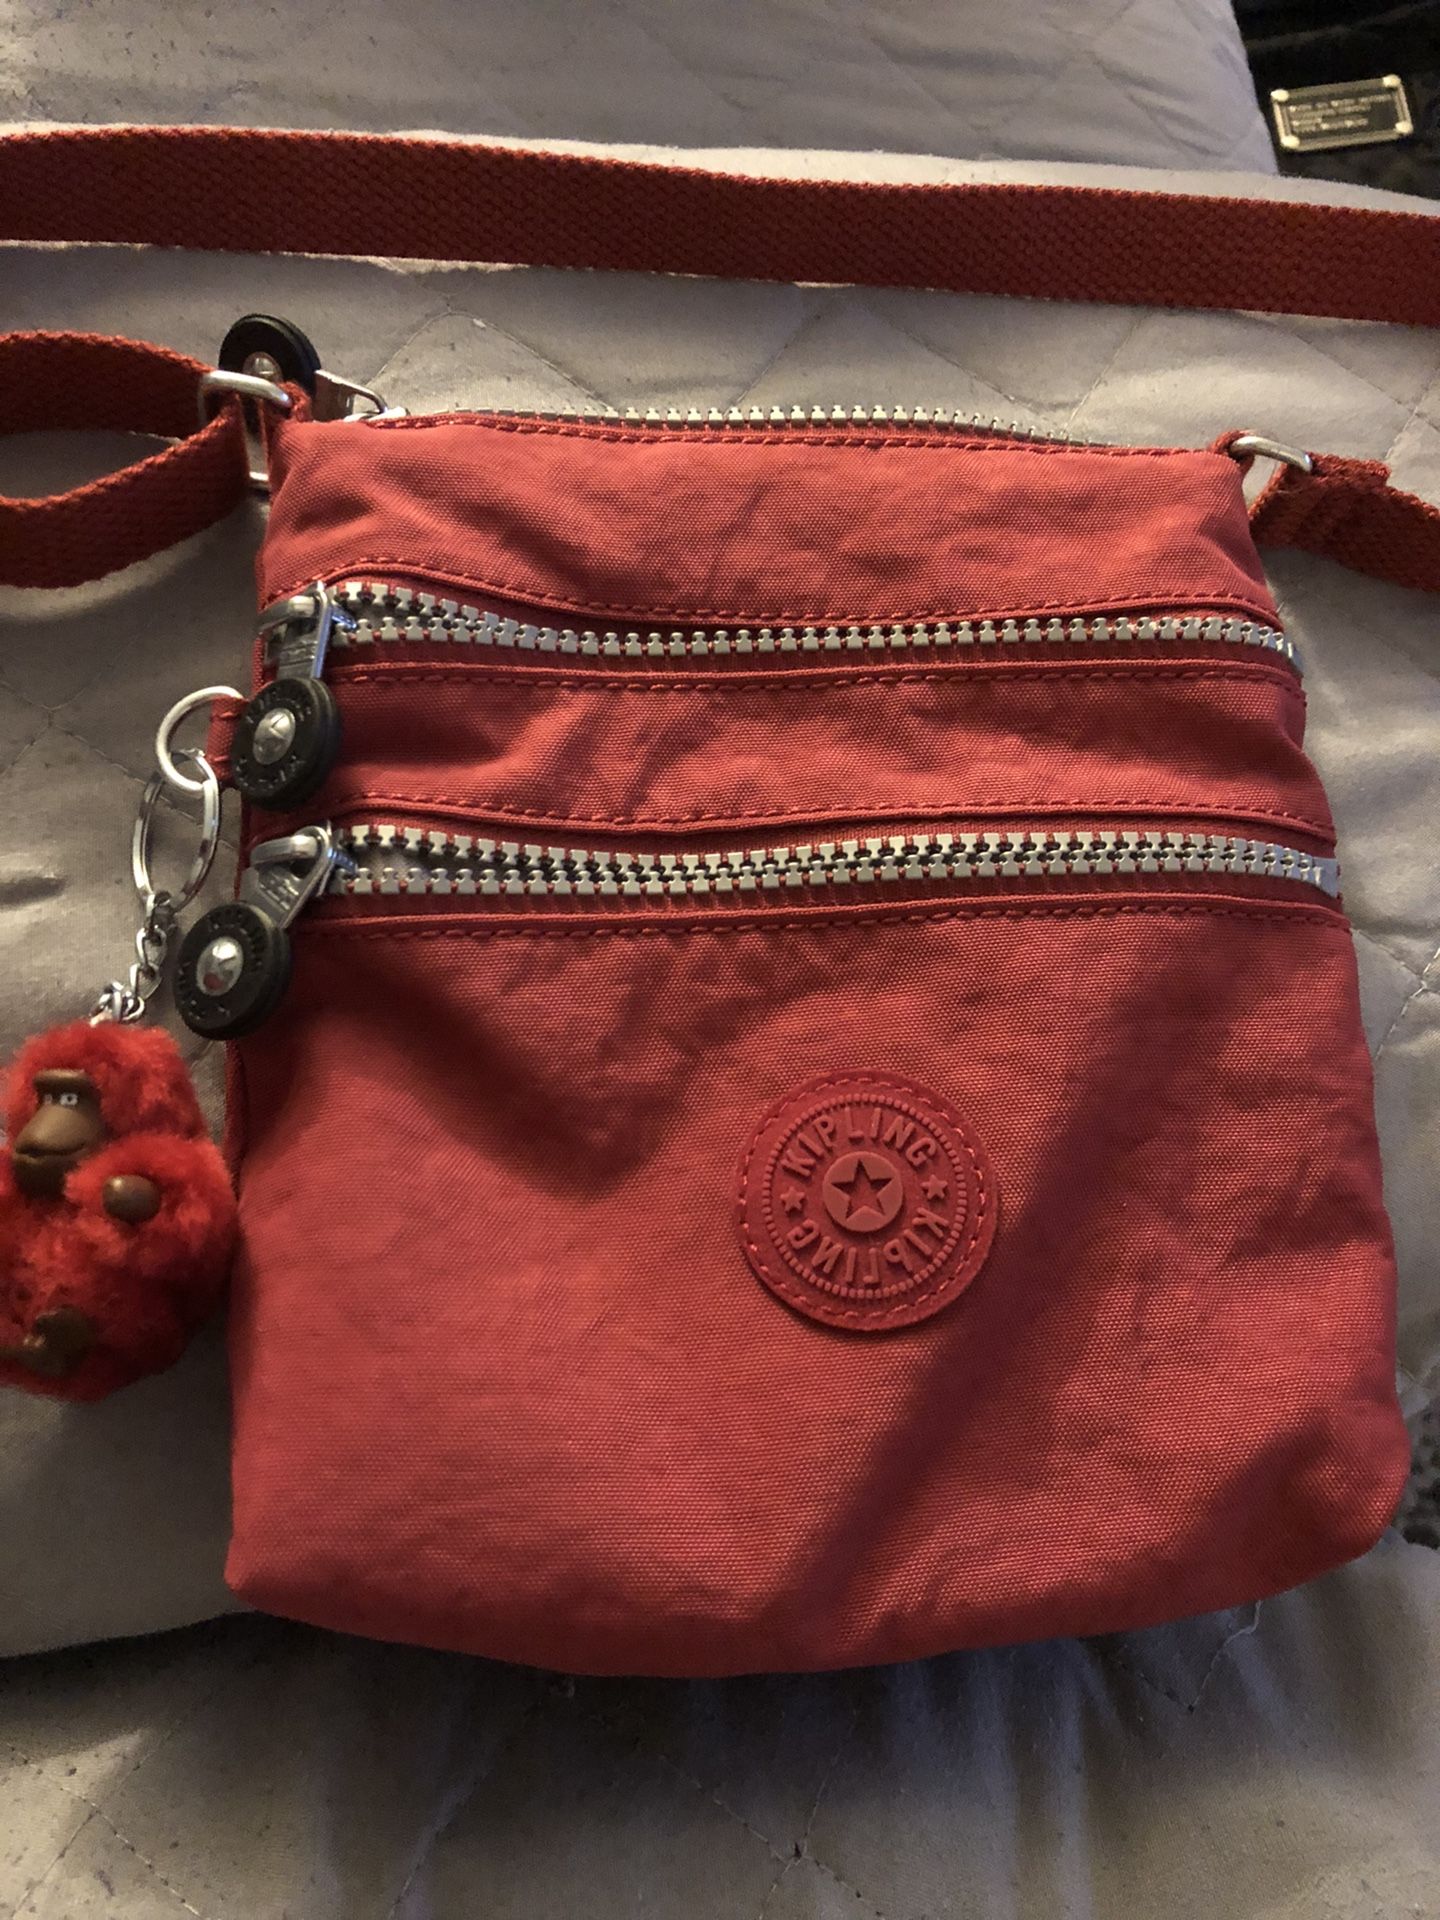 Mini Kipling bag